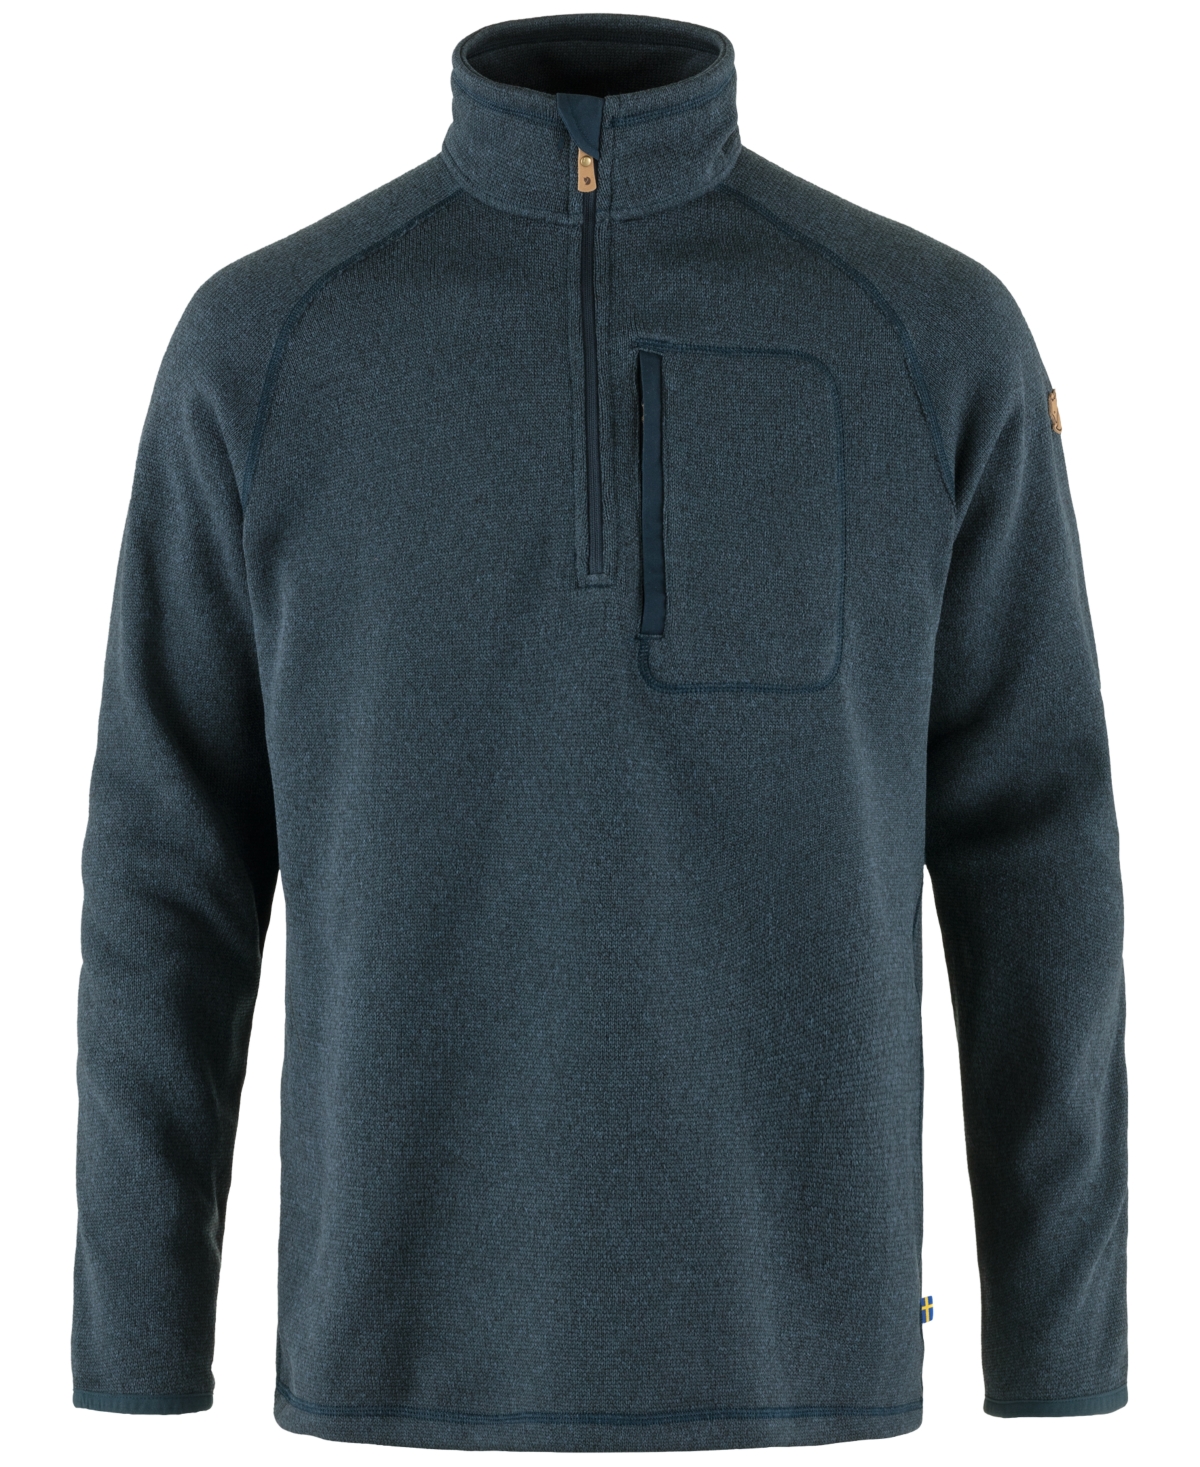 Men's Ovik Half-Zip Fleece Jacket - Navy